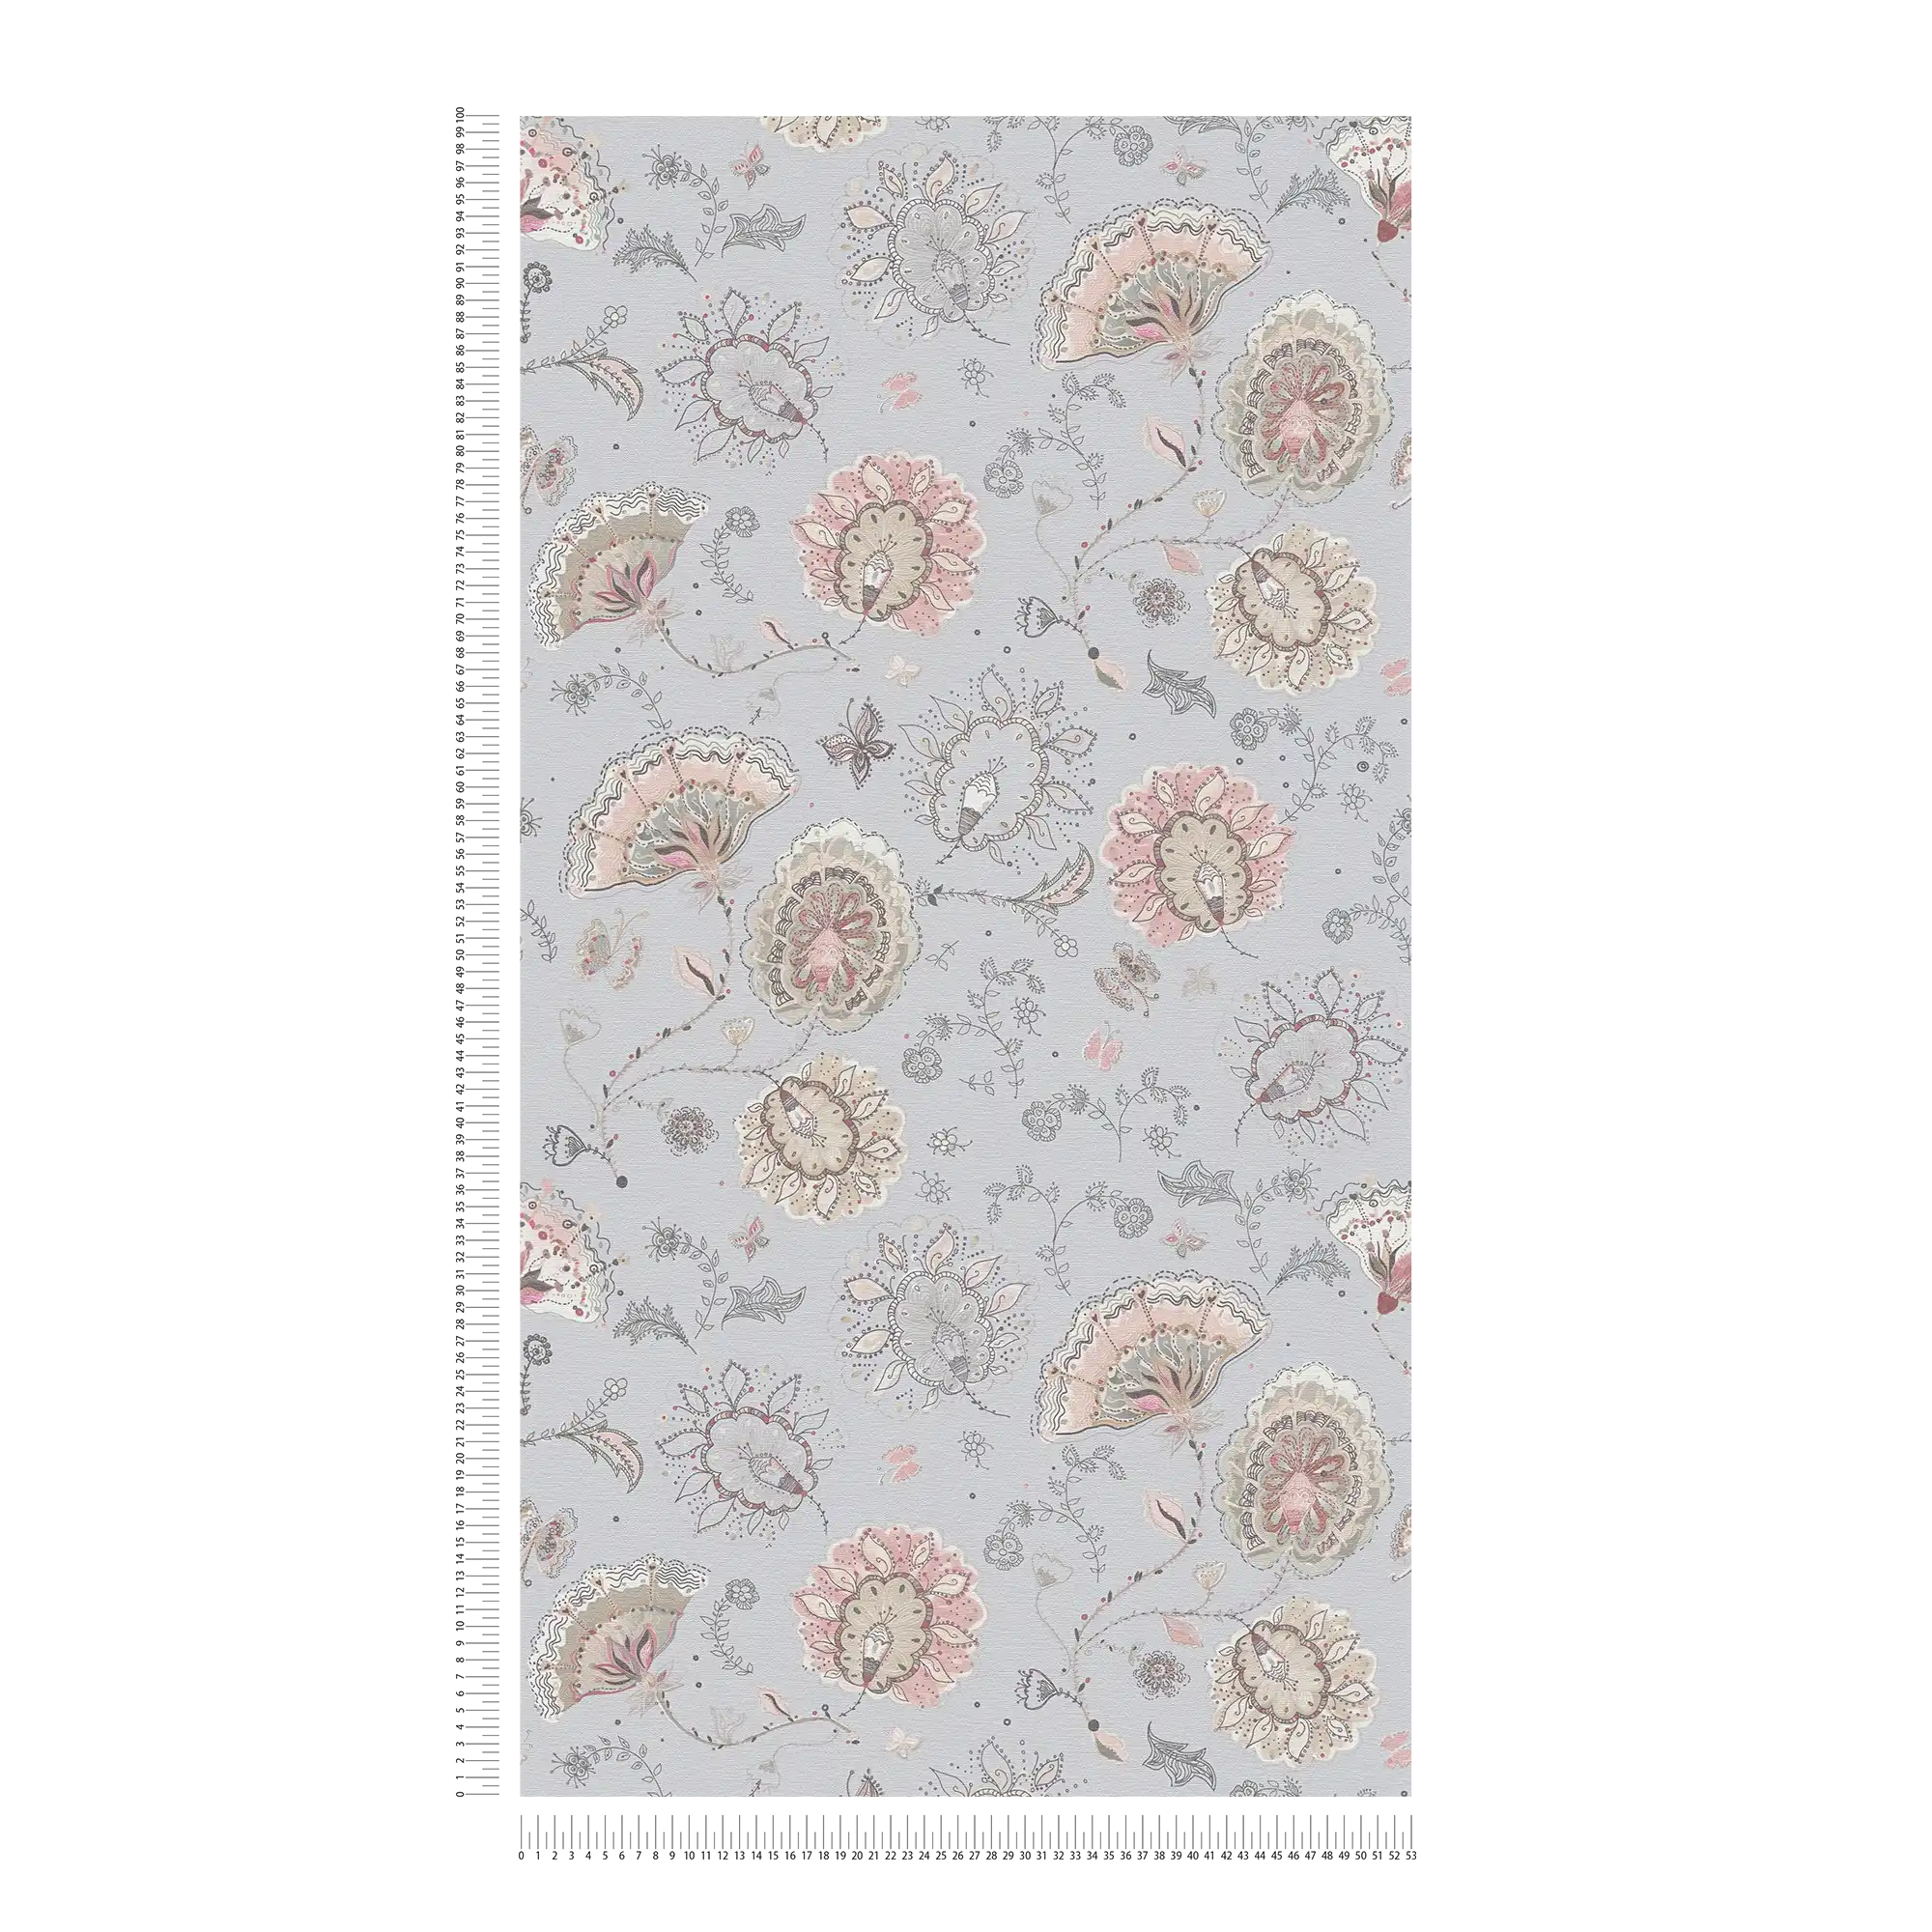             Carta da parati in tessuto non tessuto con motivo floreale astratto a struttura fine - grigio, beige, crema
        